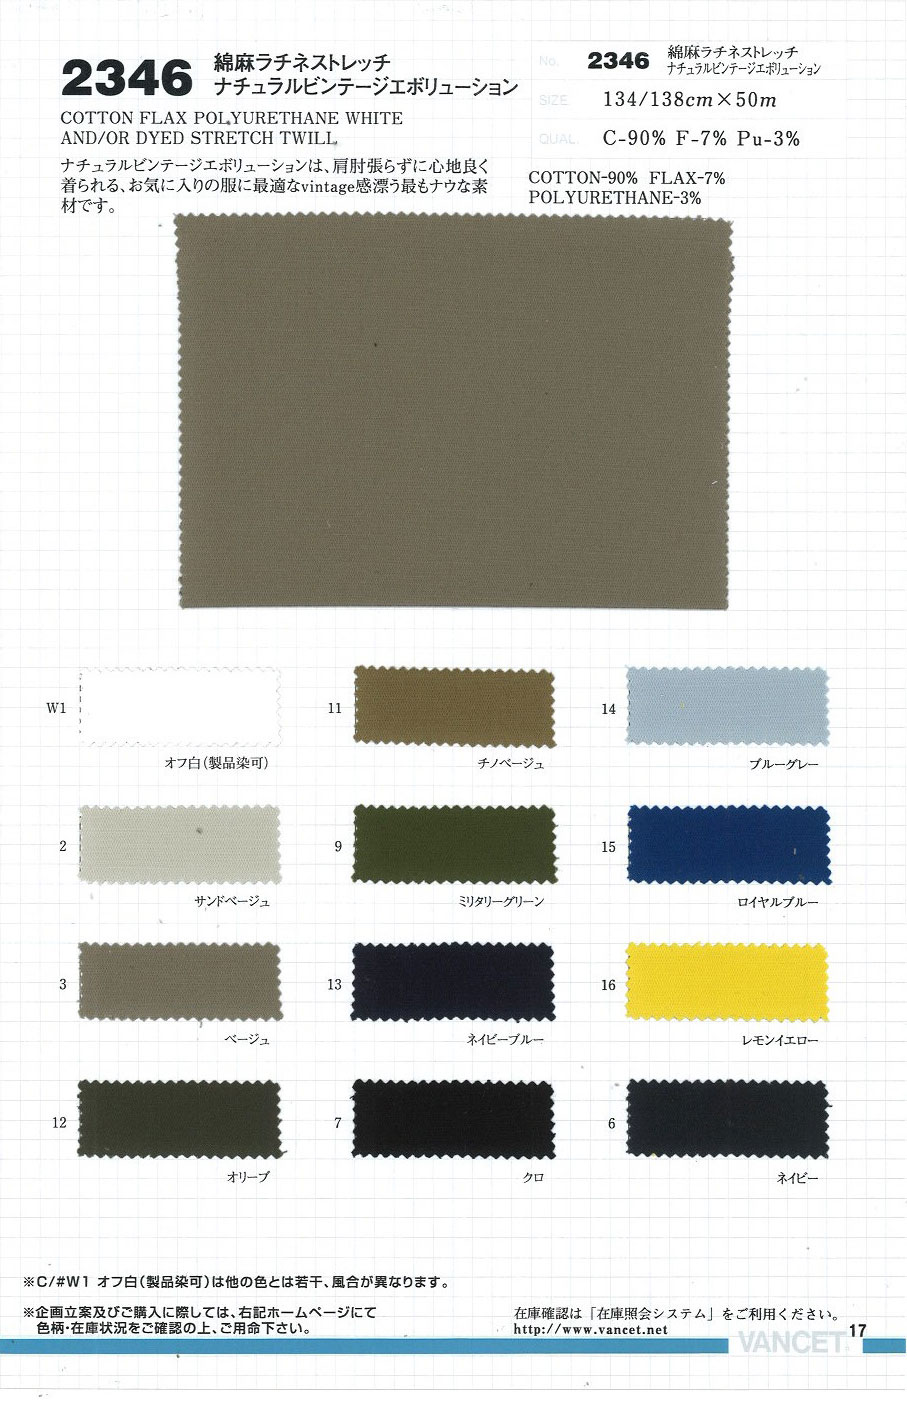 2346 Cotton Linen Rachi Stretch Natural Vintage Evolution[Textile / Fabric] VANCET